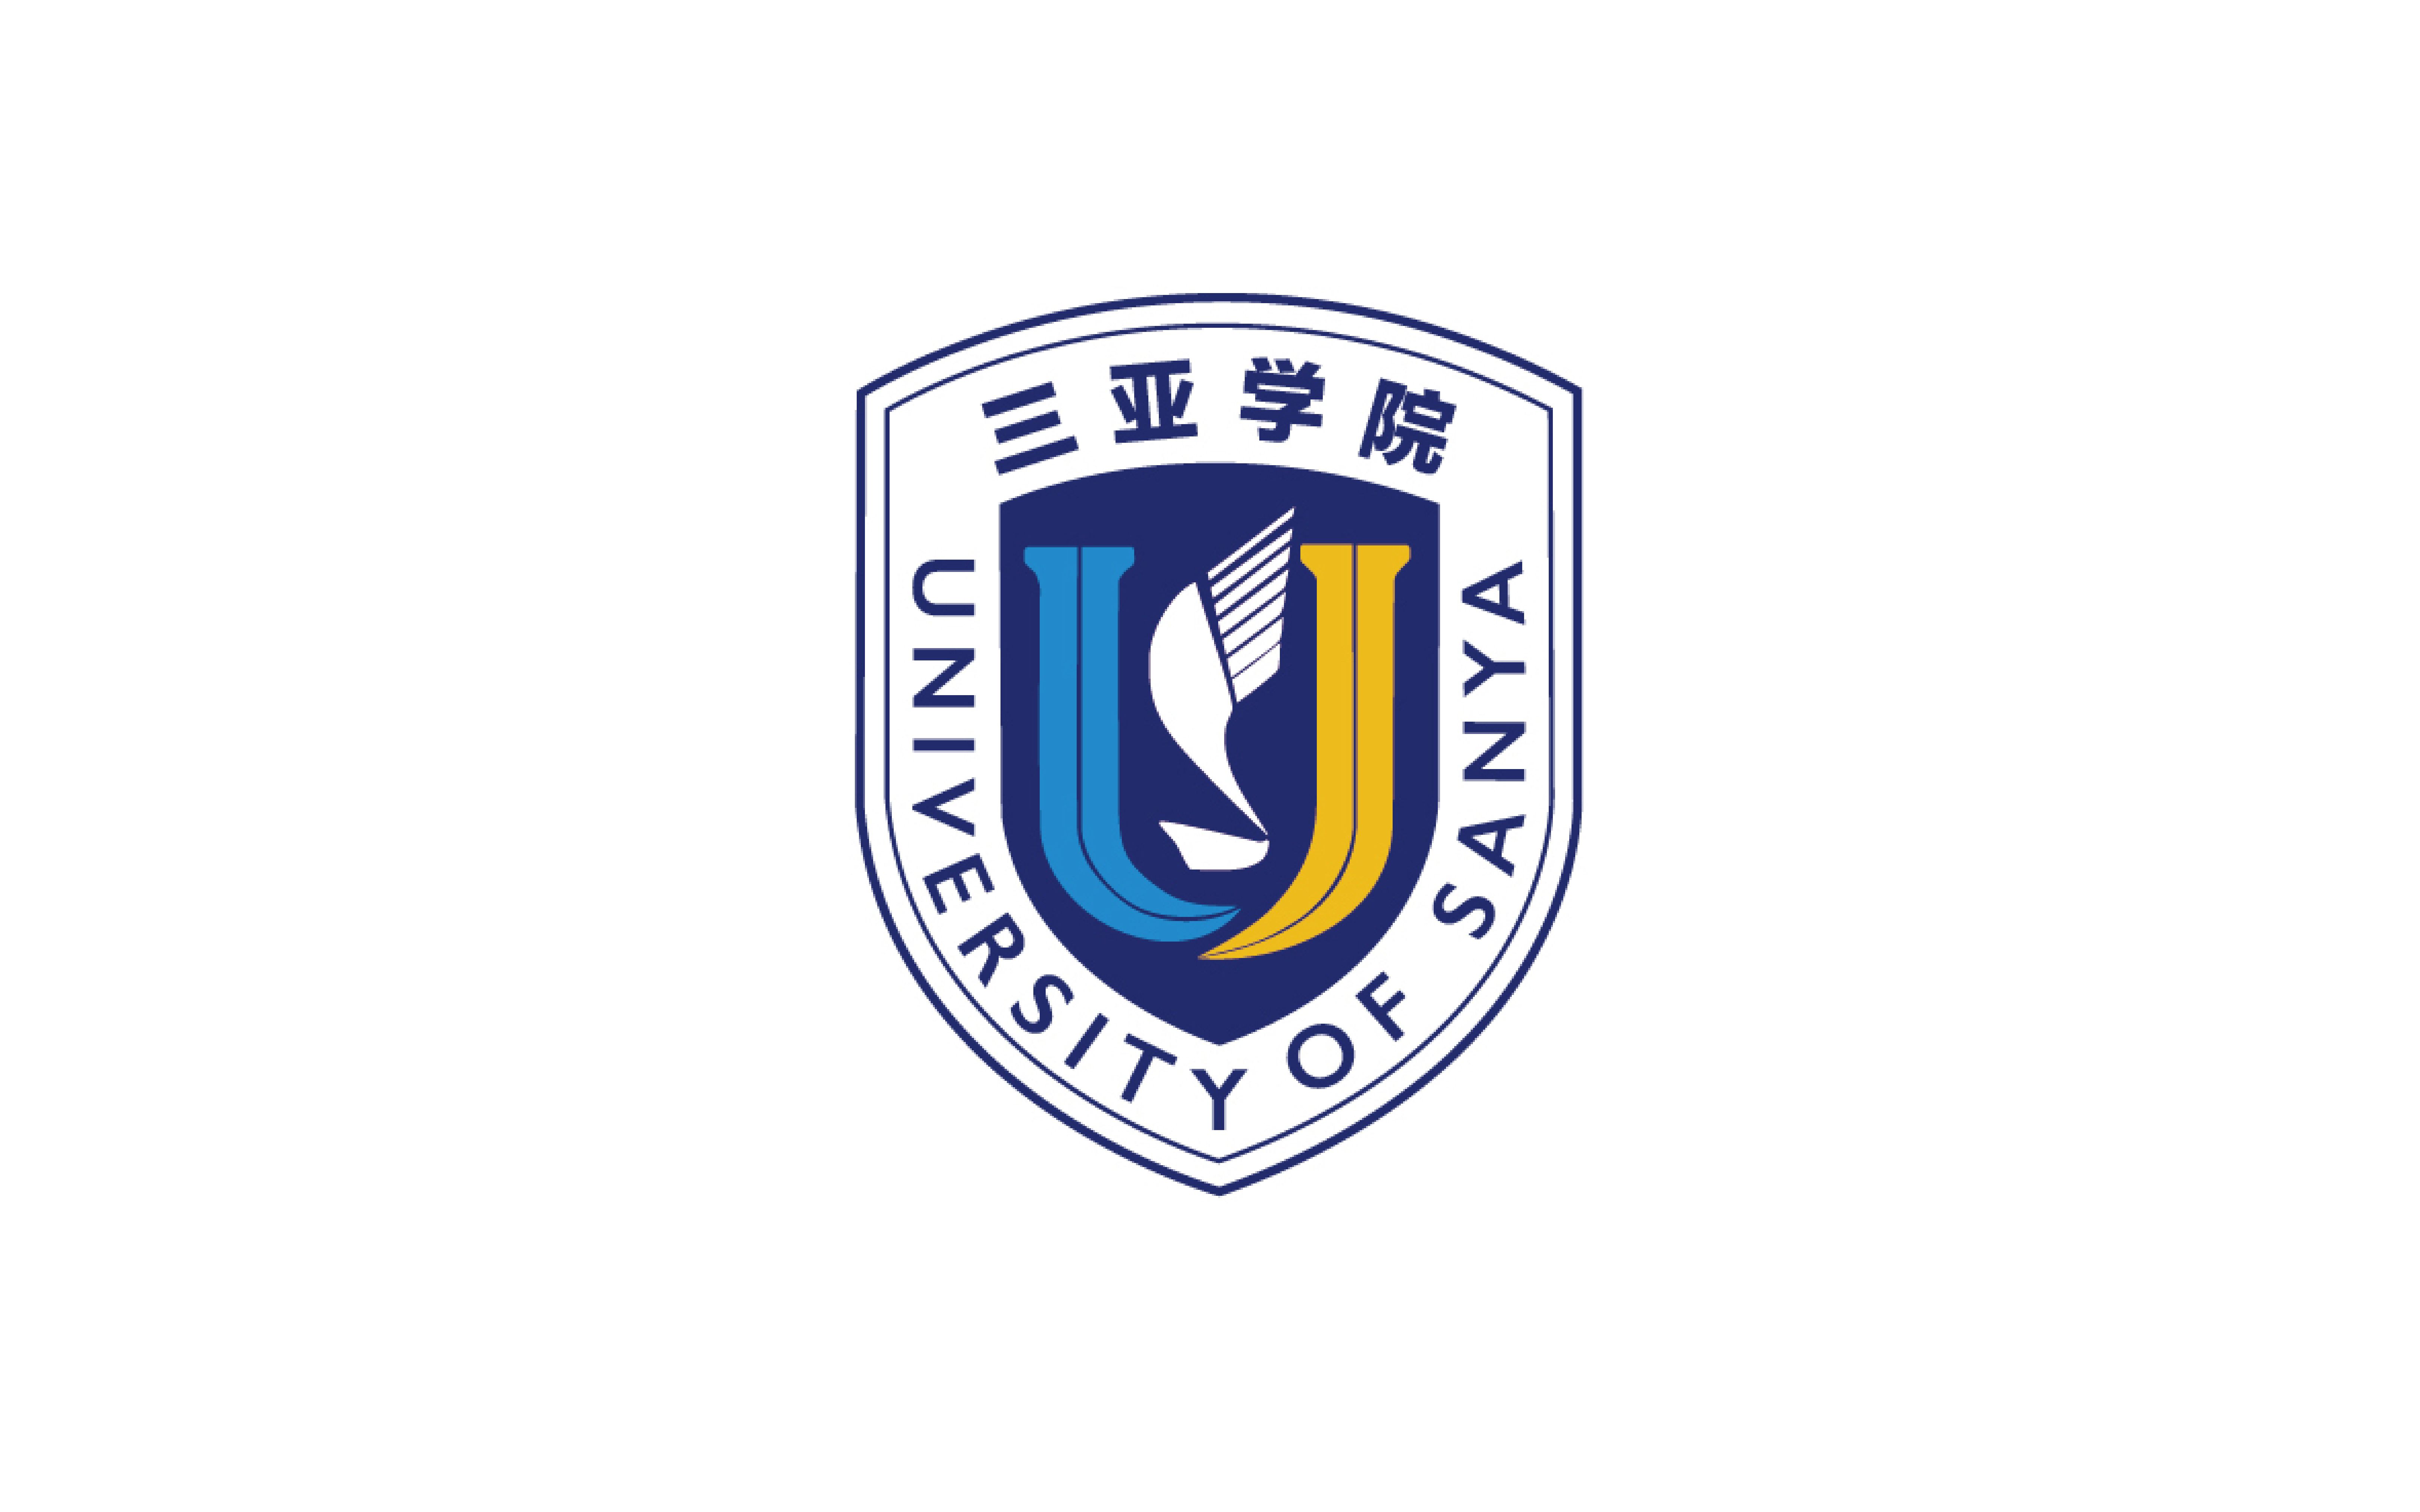 三亚学院logo图片